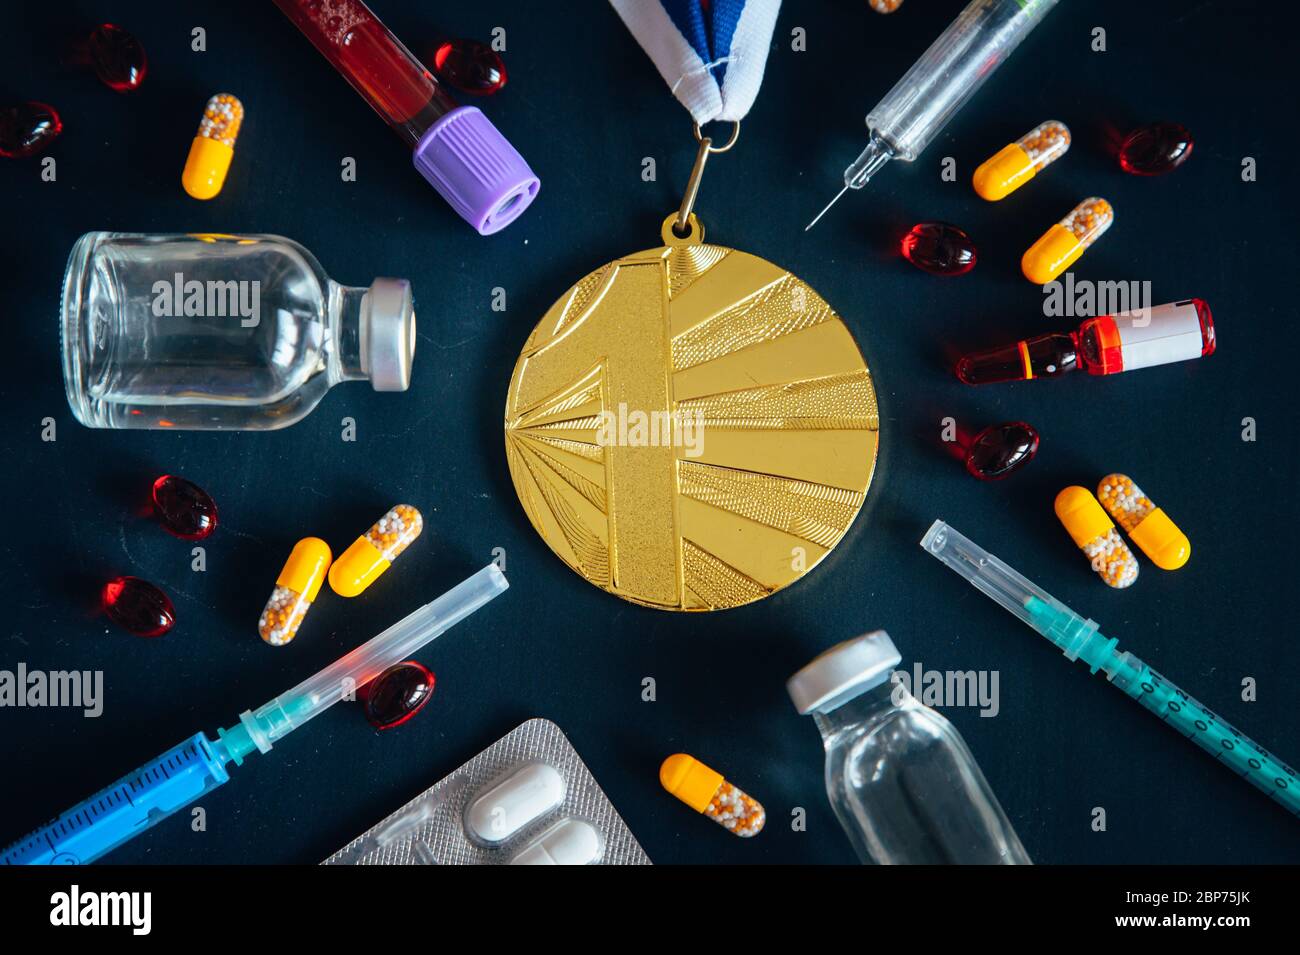 Doping im Sport, Konzeptfoto. Medaillenspiegel, Medikamente,  Medikamentenflasche für Injektion medizinische Glasfläschchen  Stockfotografie - Alamy